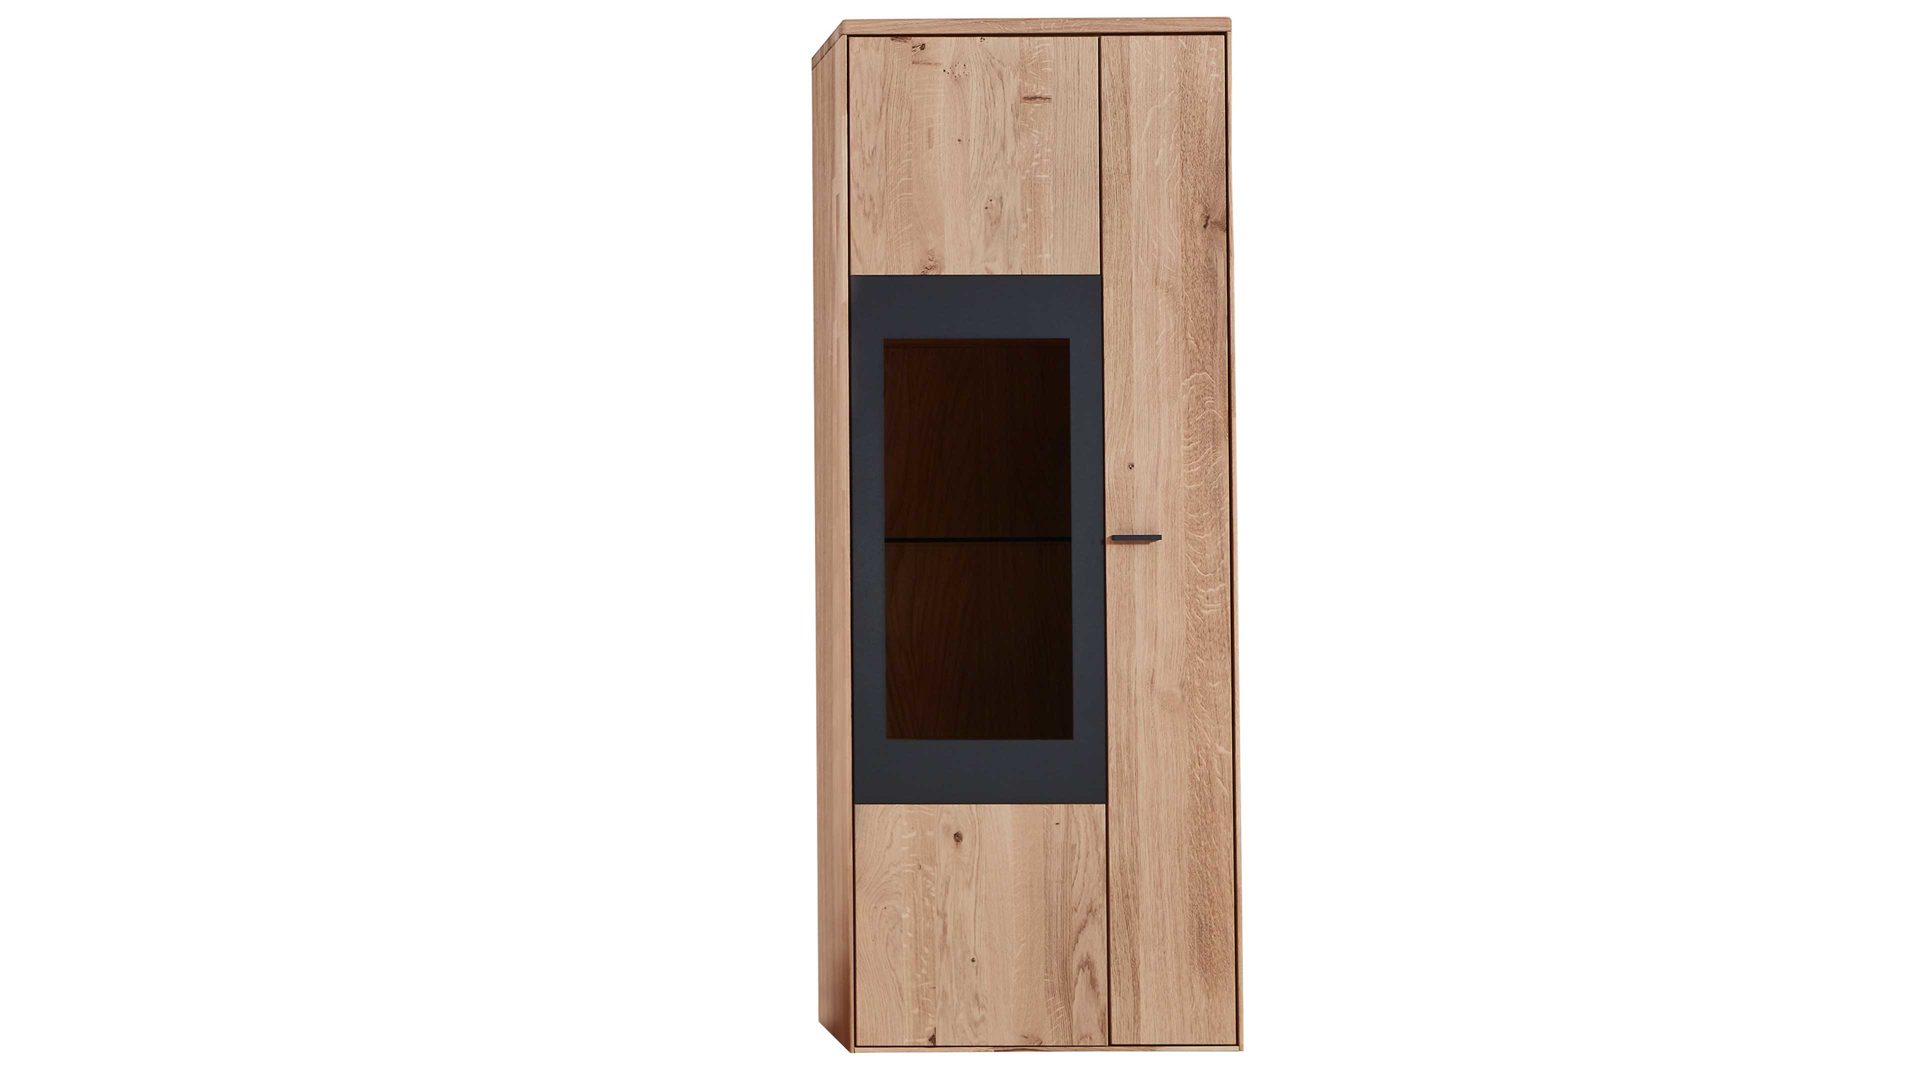 Hängeschrank Wöstmann markenmöbel aus Holz in Holzfarben WÖSTMANN Wohnprogramm WM 1910 - Hängeelement Wildeiche - eine Tür, Breite ca. 62 cm